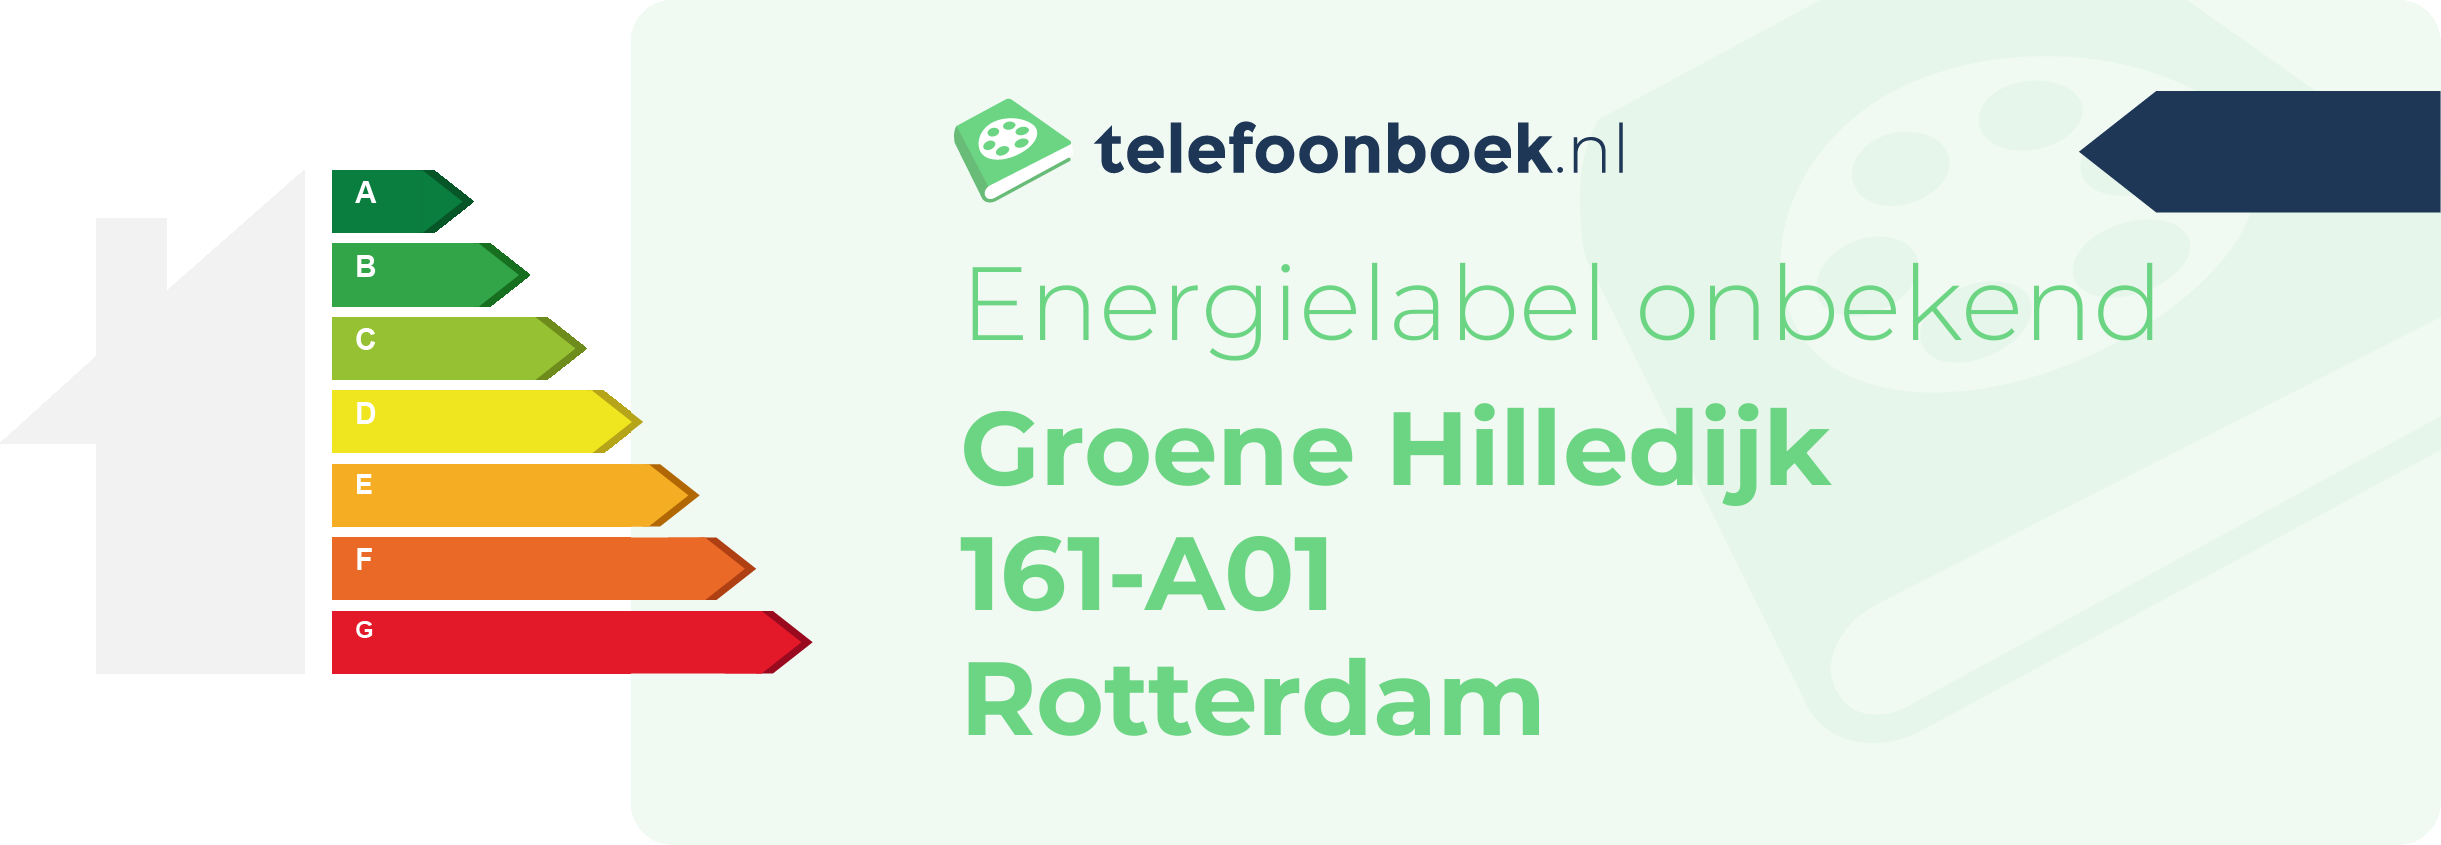 Energielabel Groene Hilledijk 161-A01 Rotterdam